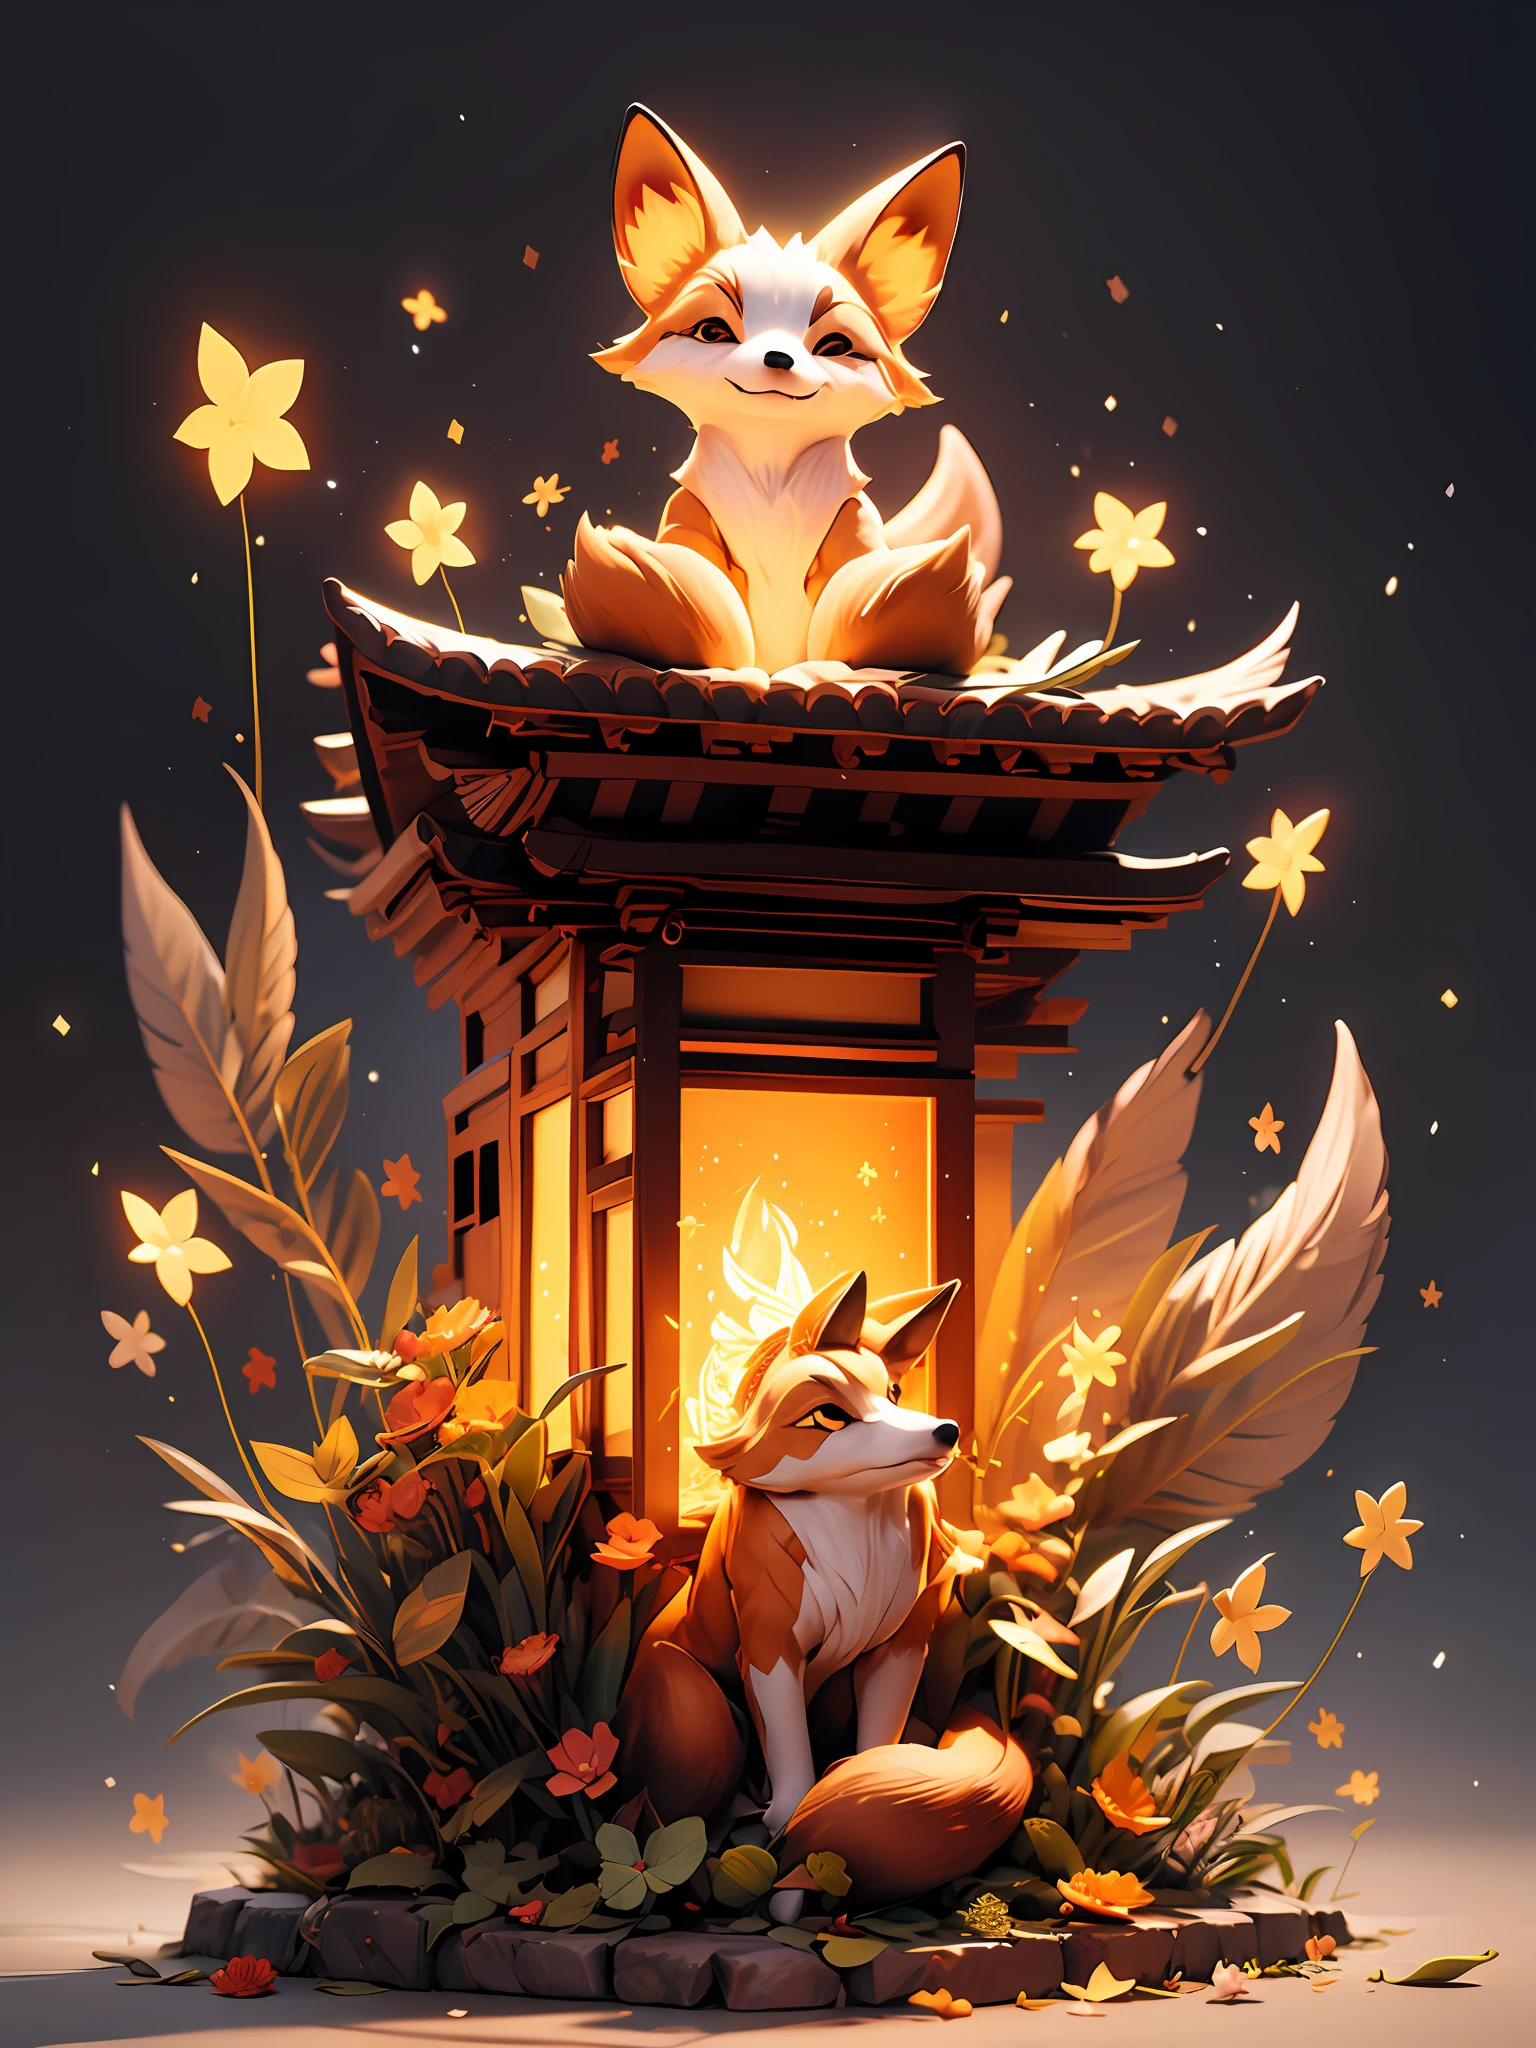 "Bezaubernde Nachtszene mit einem japanischen Tempel, einem faszinierenden leuchtenden Fuchs, umgeben von faszinierenden Lichtpartikeln und einem atemberaubenden Lichteffekt. Keine Menschen anwesend."